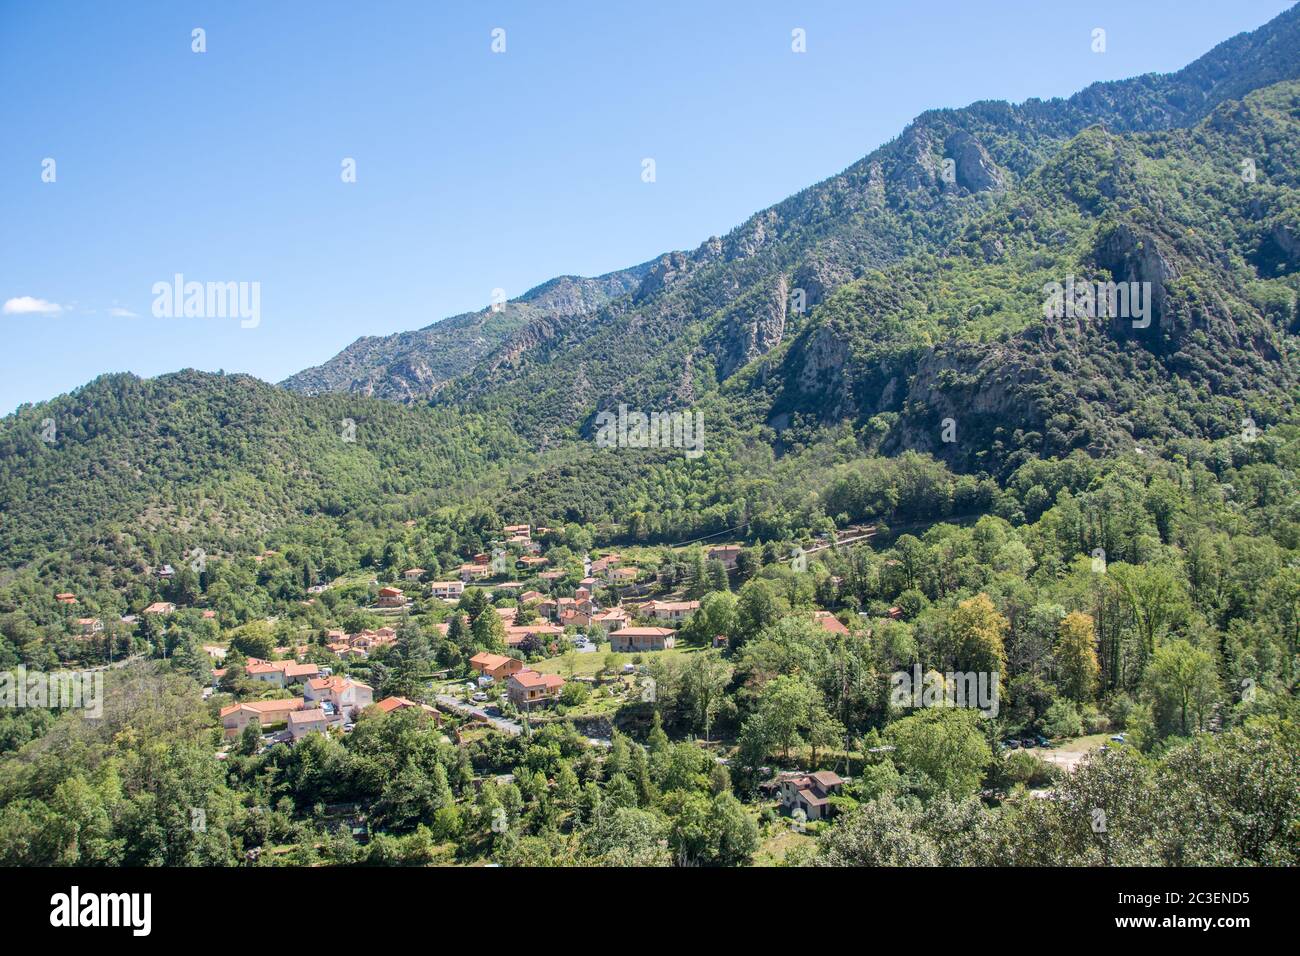 Découverte des Pyrénées orientales en été, région encore sauvage de France Banque D'Images